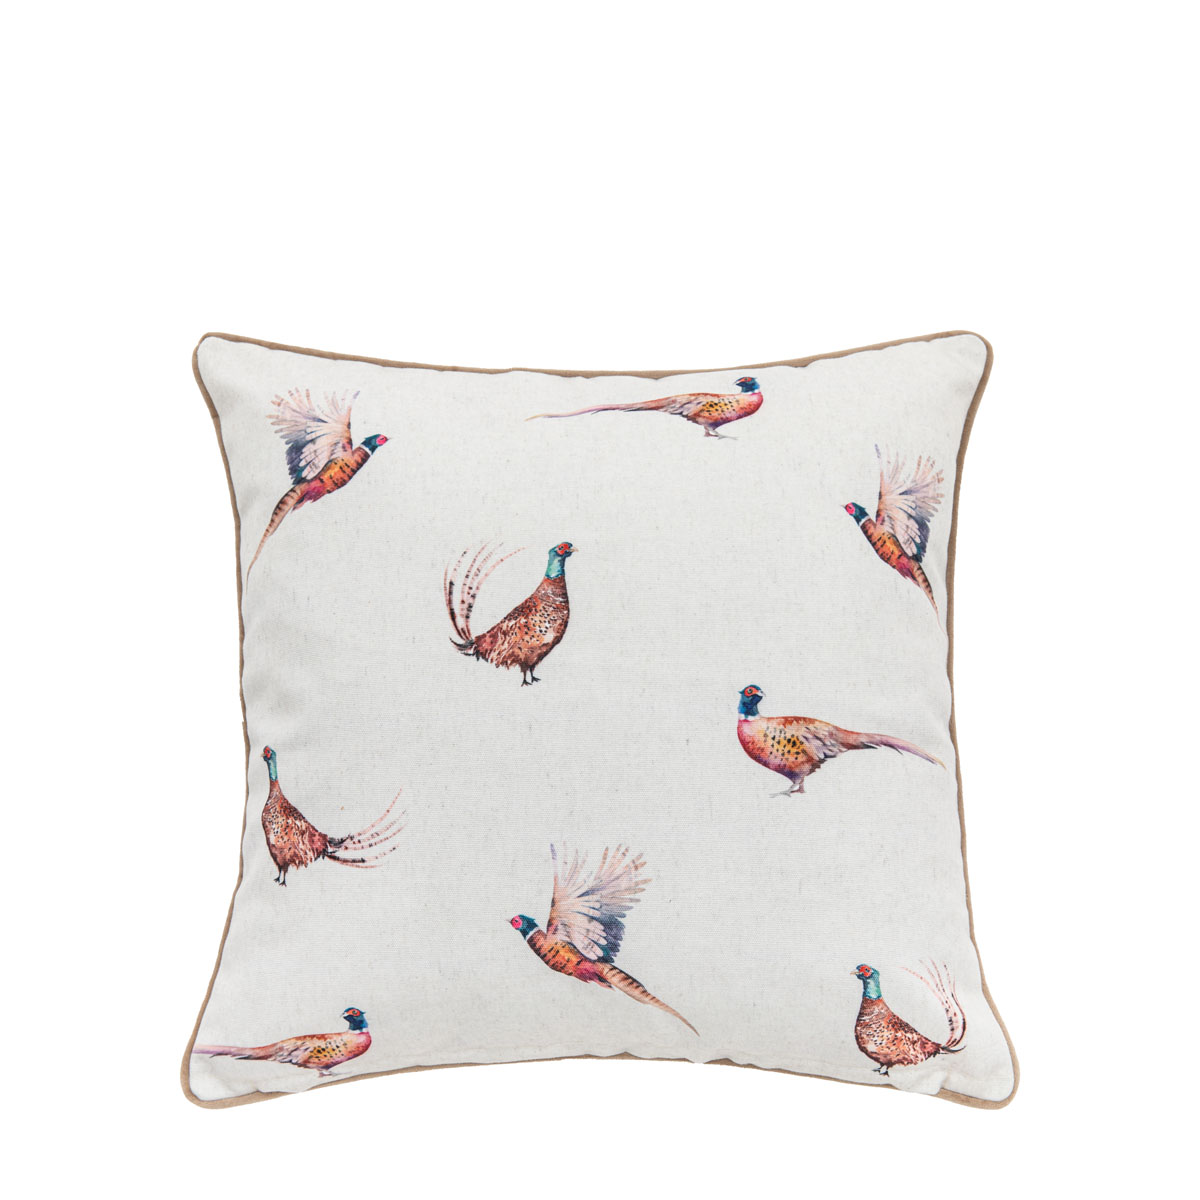 Watercolour Kilburn Pheasant Cushion Cover 45x45cm